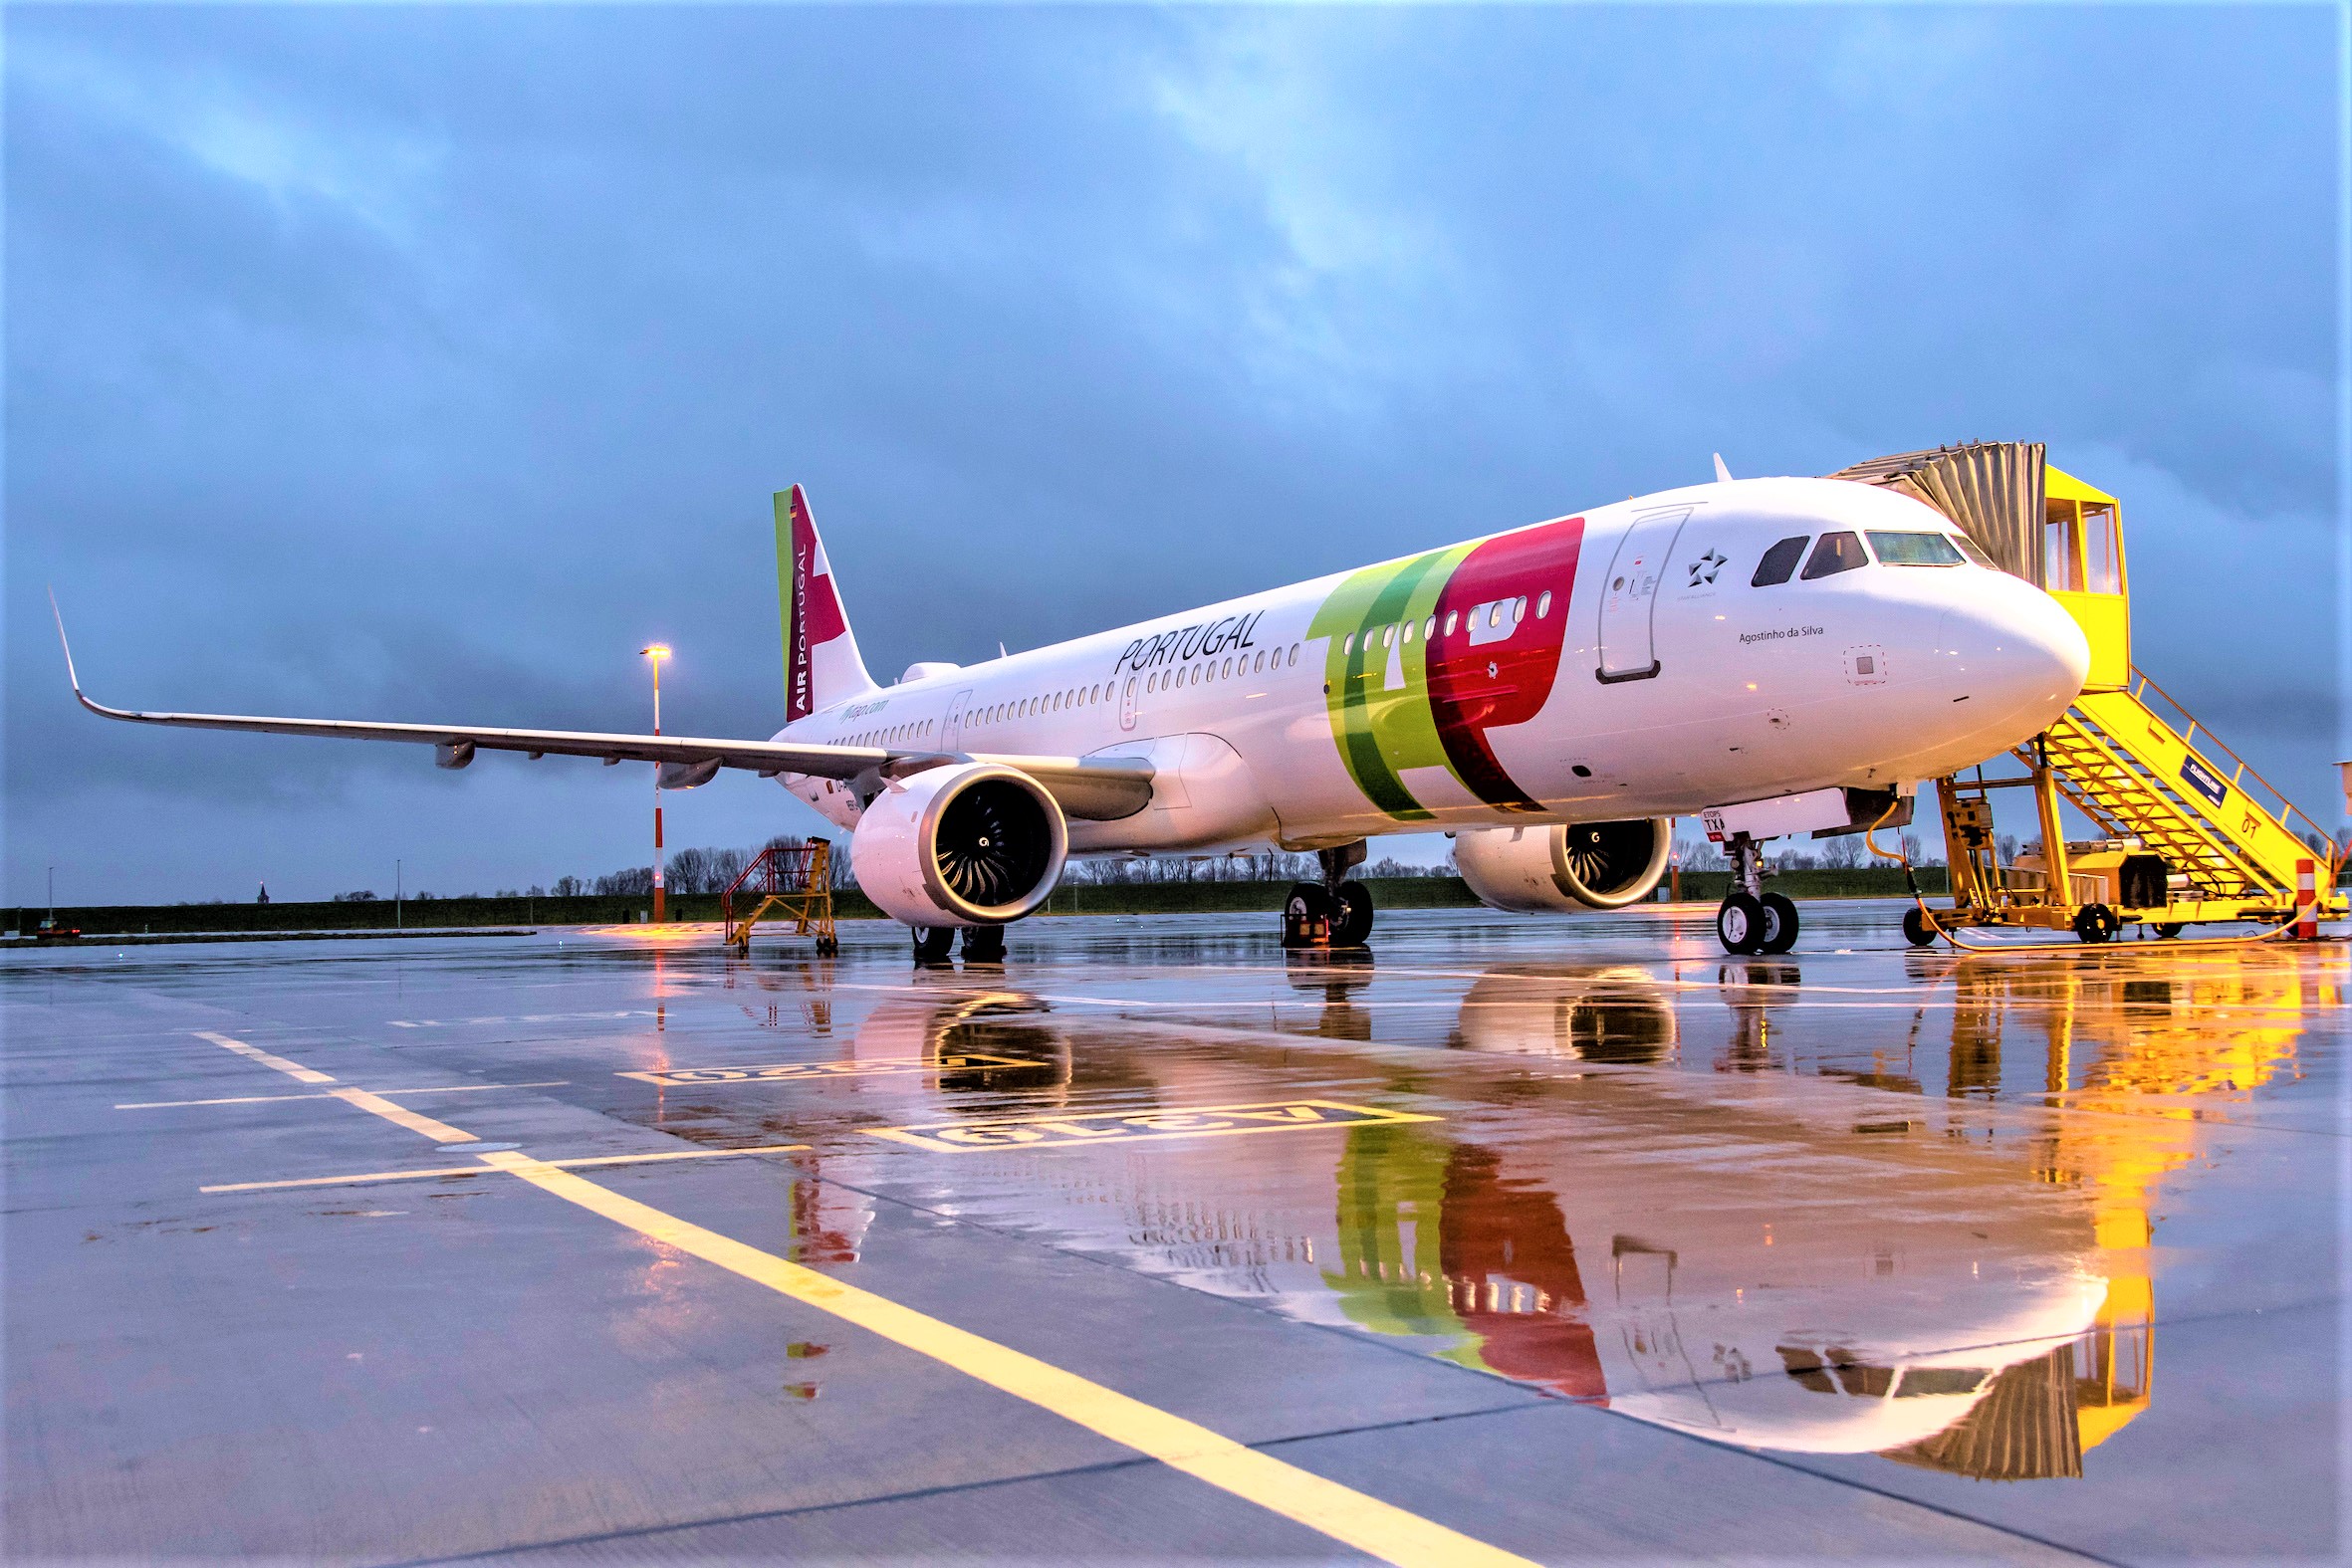 TAP TAP Air Portugal, vettore membro di Star Alliance, ha partecipato anche quest'anno al TTG di Rimini per rafforzare le relazioni con gli agenti di viaggio e illustrare loro tutte le novità presso il proprio stand.